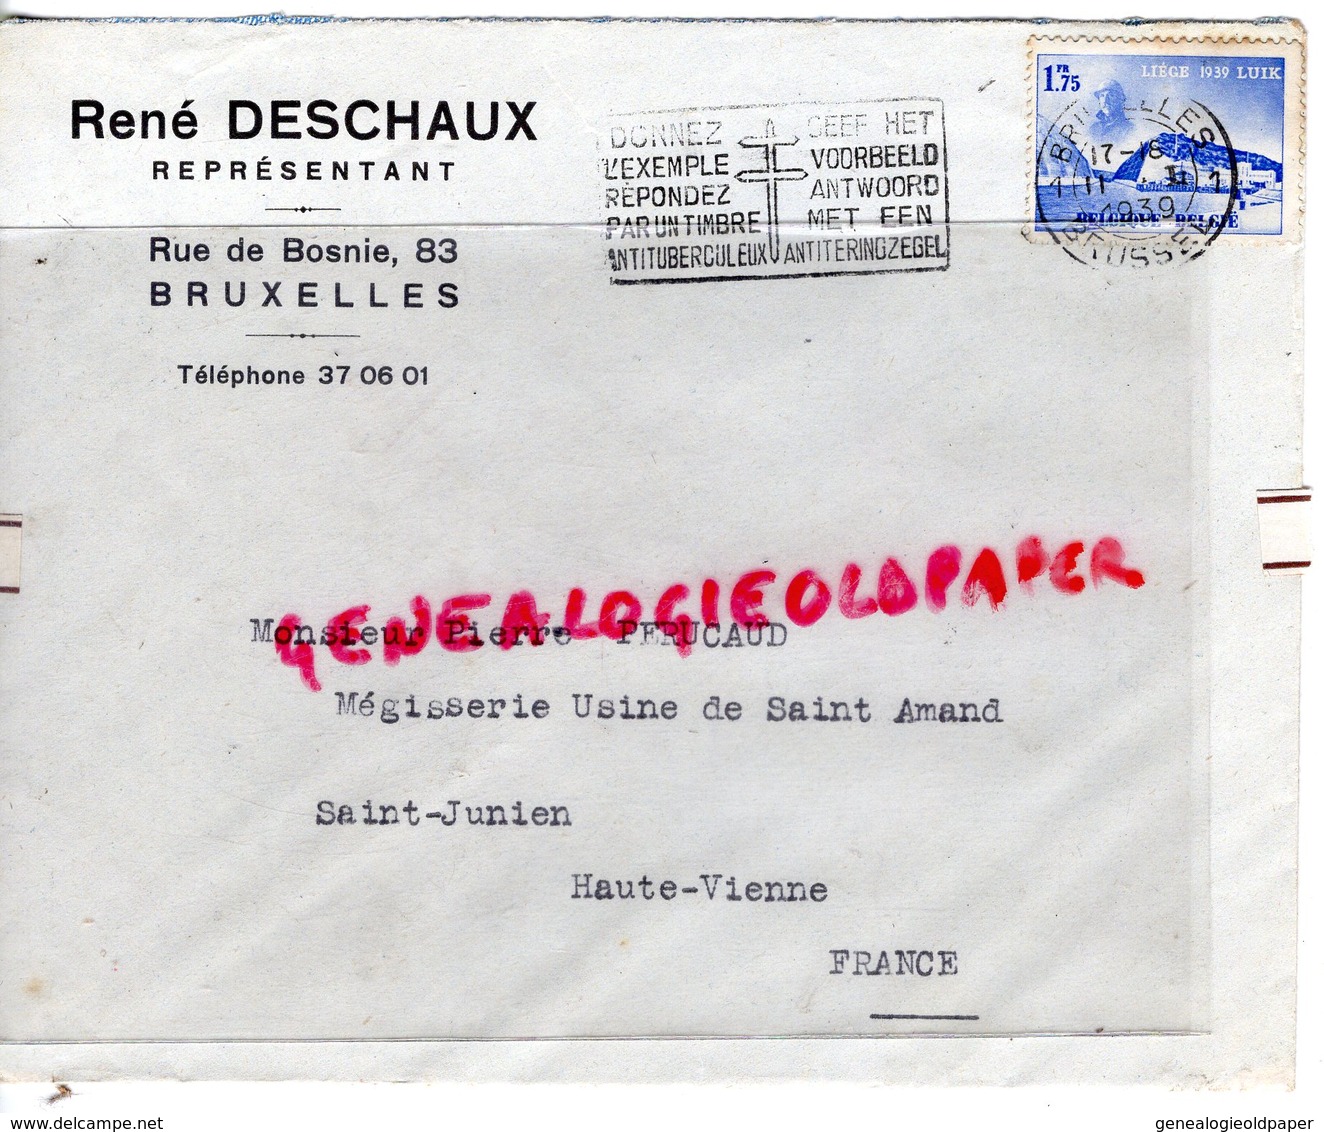 BELGIQUE-BRUXELLES- ENVELOPPE RENE DESCHAUX-REPRESENTANT 83 RUE DE BOSNIE-PIERRE PERUCAUD MEGISSERIE SAINT JUNIEN-1939 - Artigianato